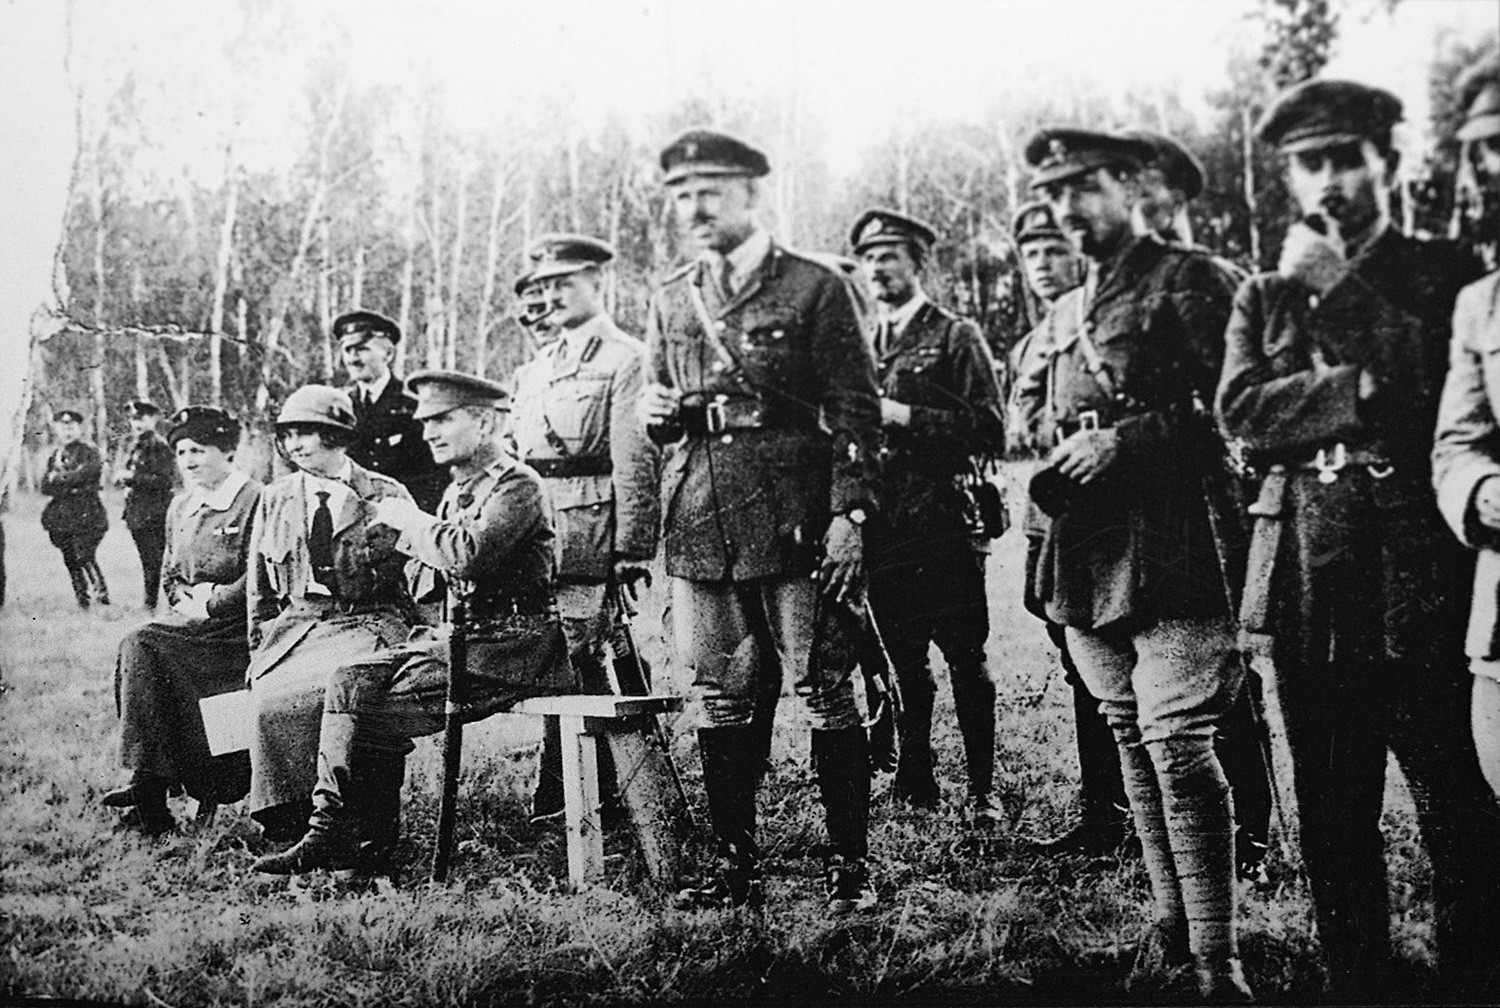 アレクサンドル・コルチャーク提督と英国の将校、1918年